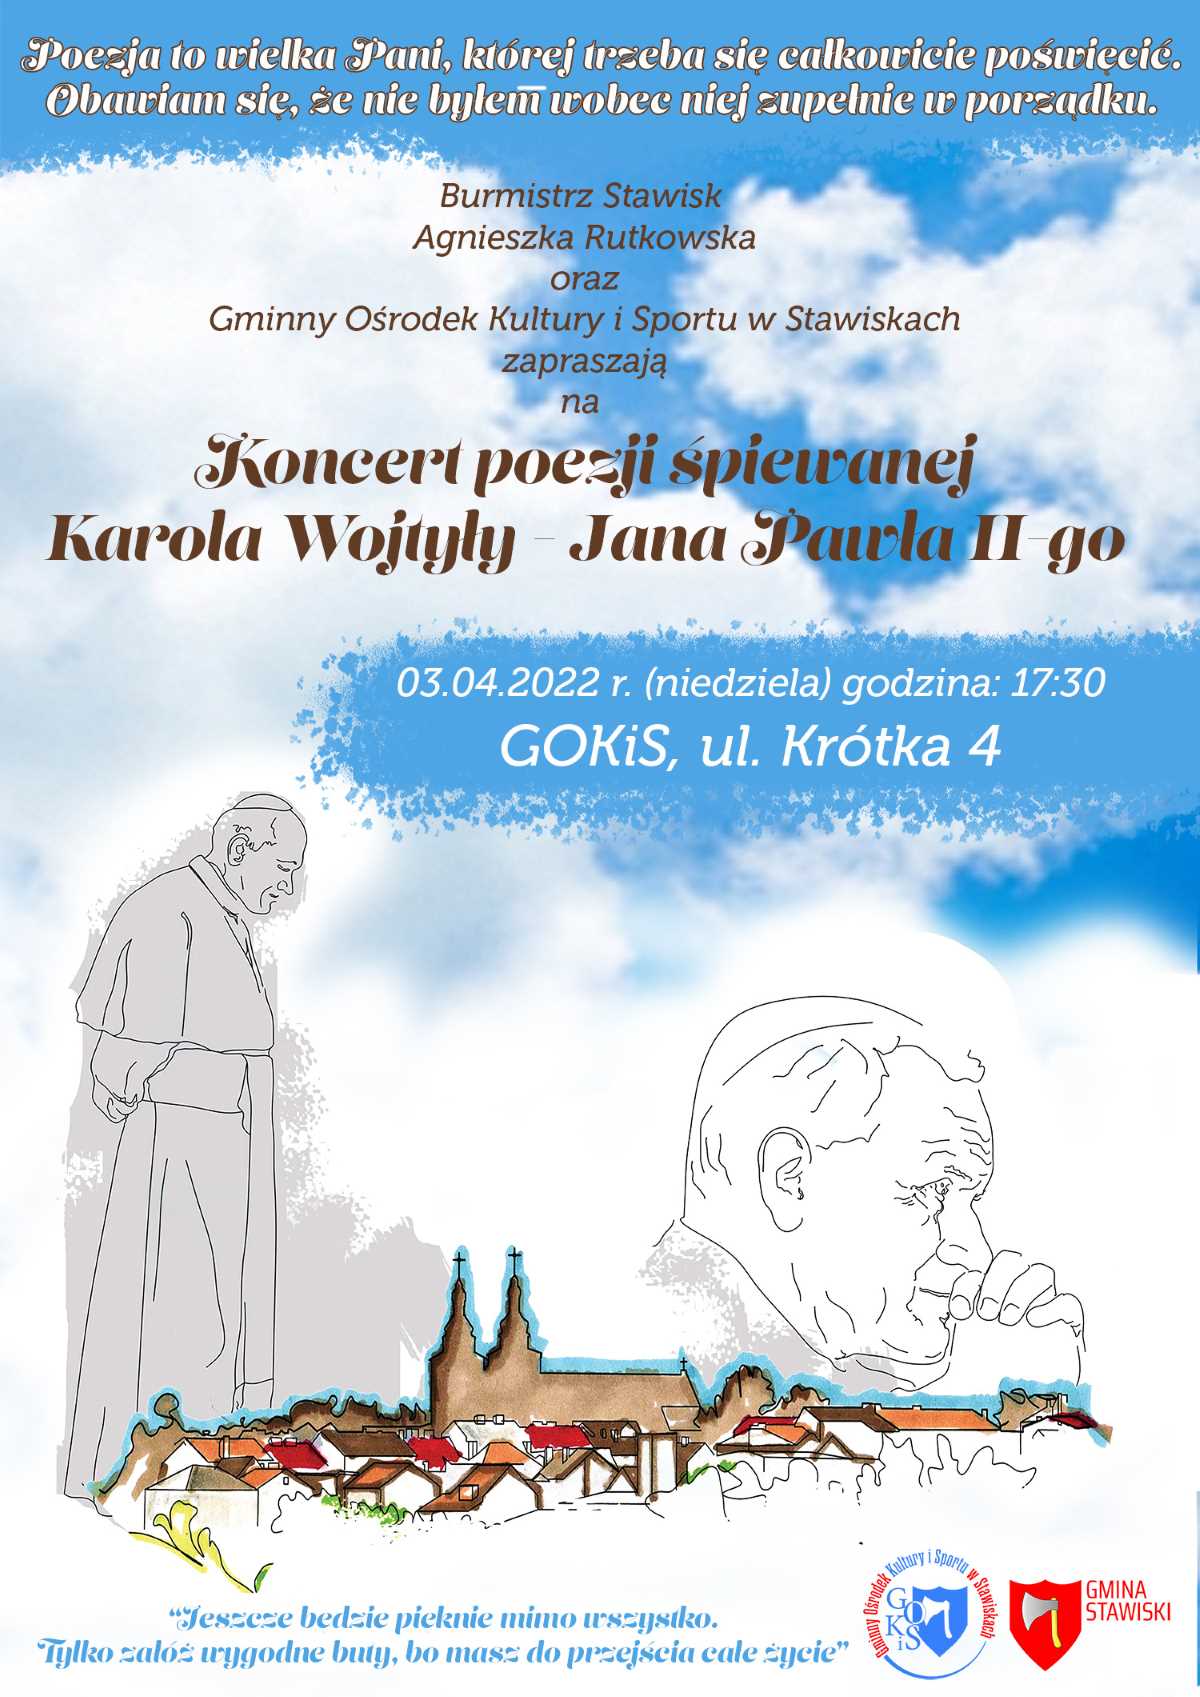 Koncert poezji śpiewanej Karola Wojtyły - Jana Pawła II